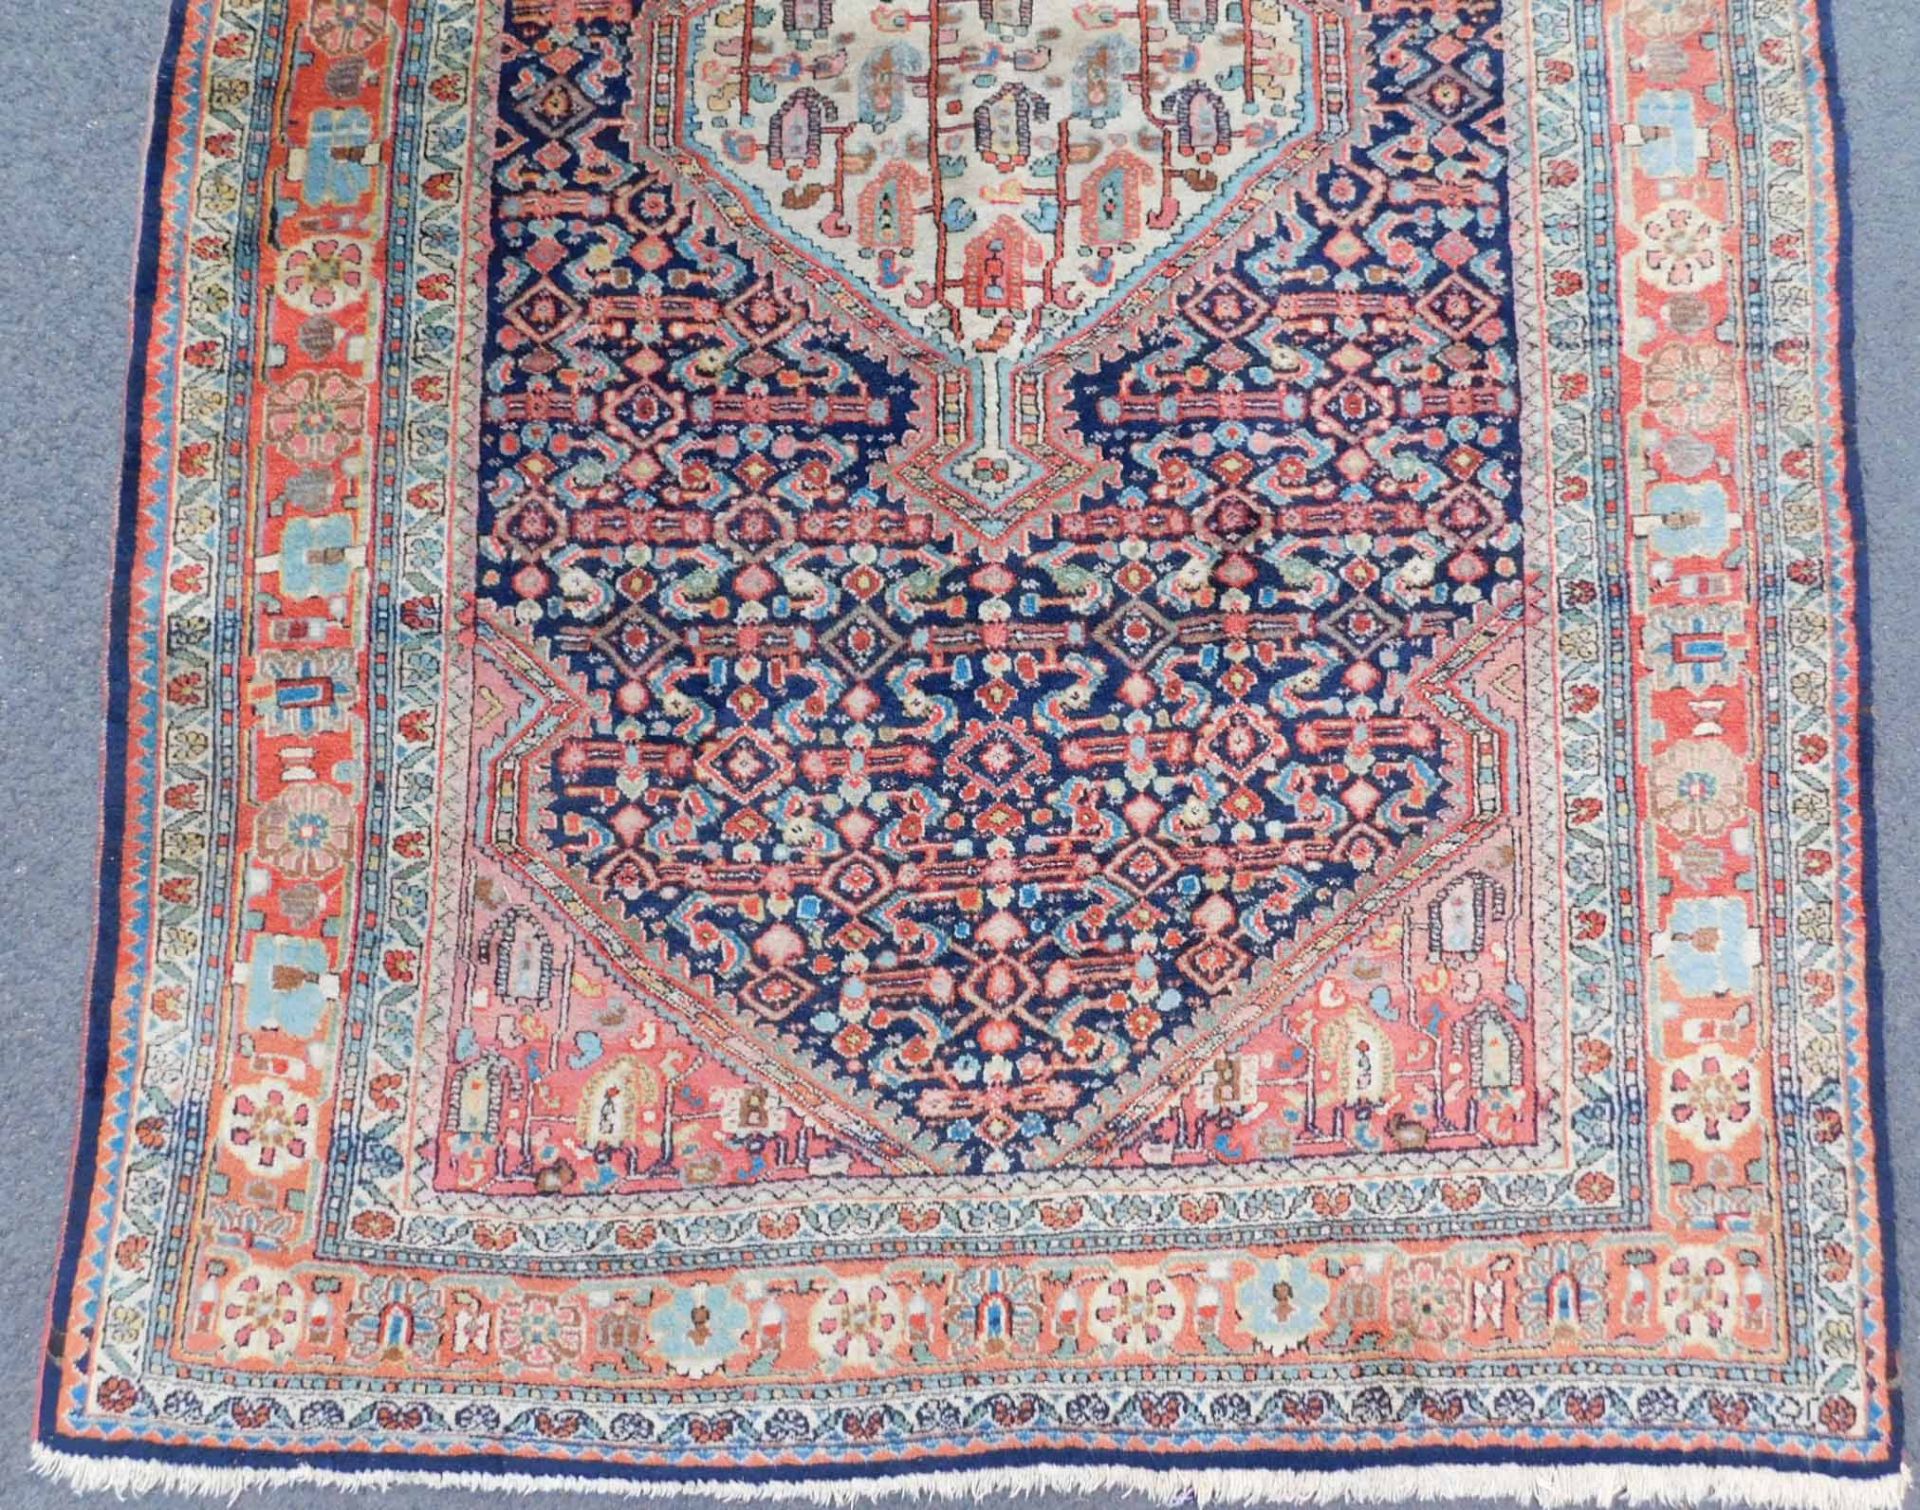 Saruk Jozan Persian carpet. Iran. Antique, around 100-130 years old. - Image 2 of 6